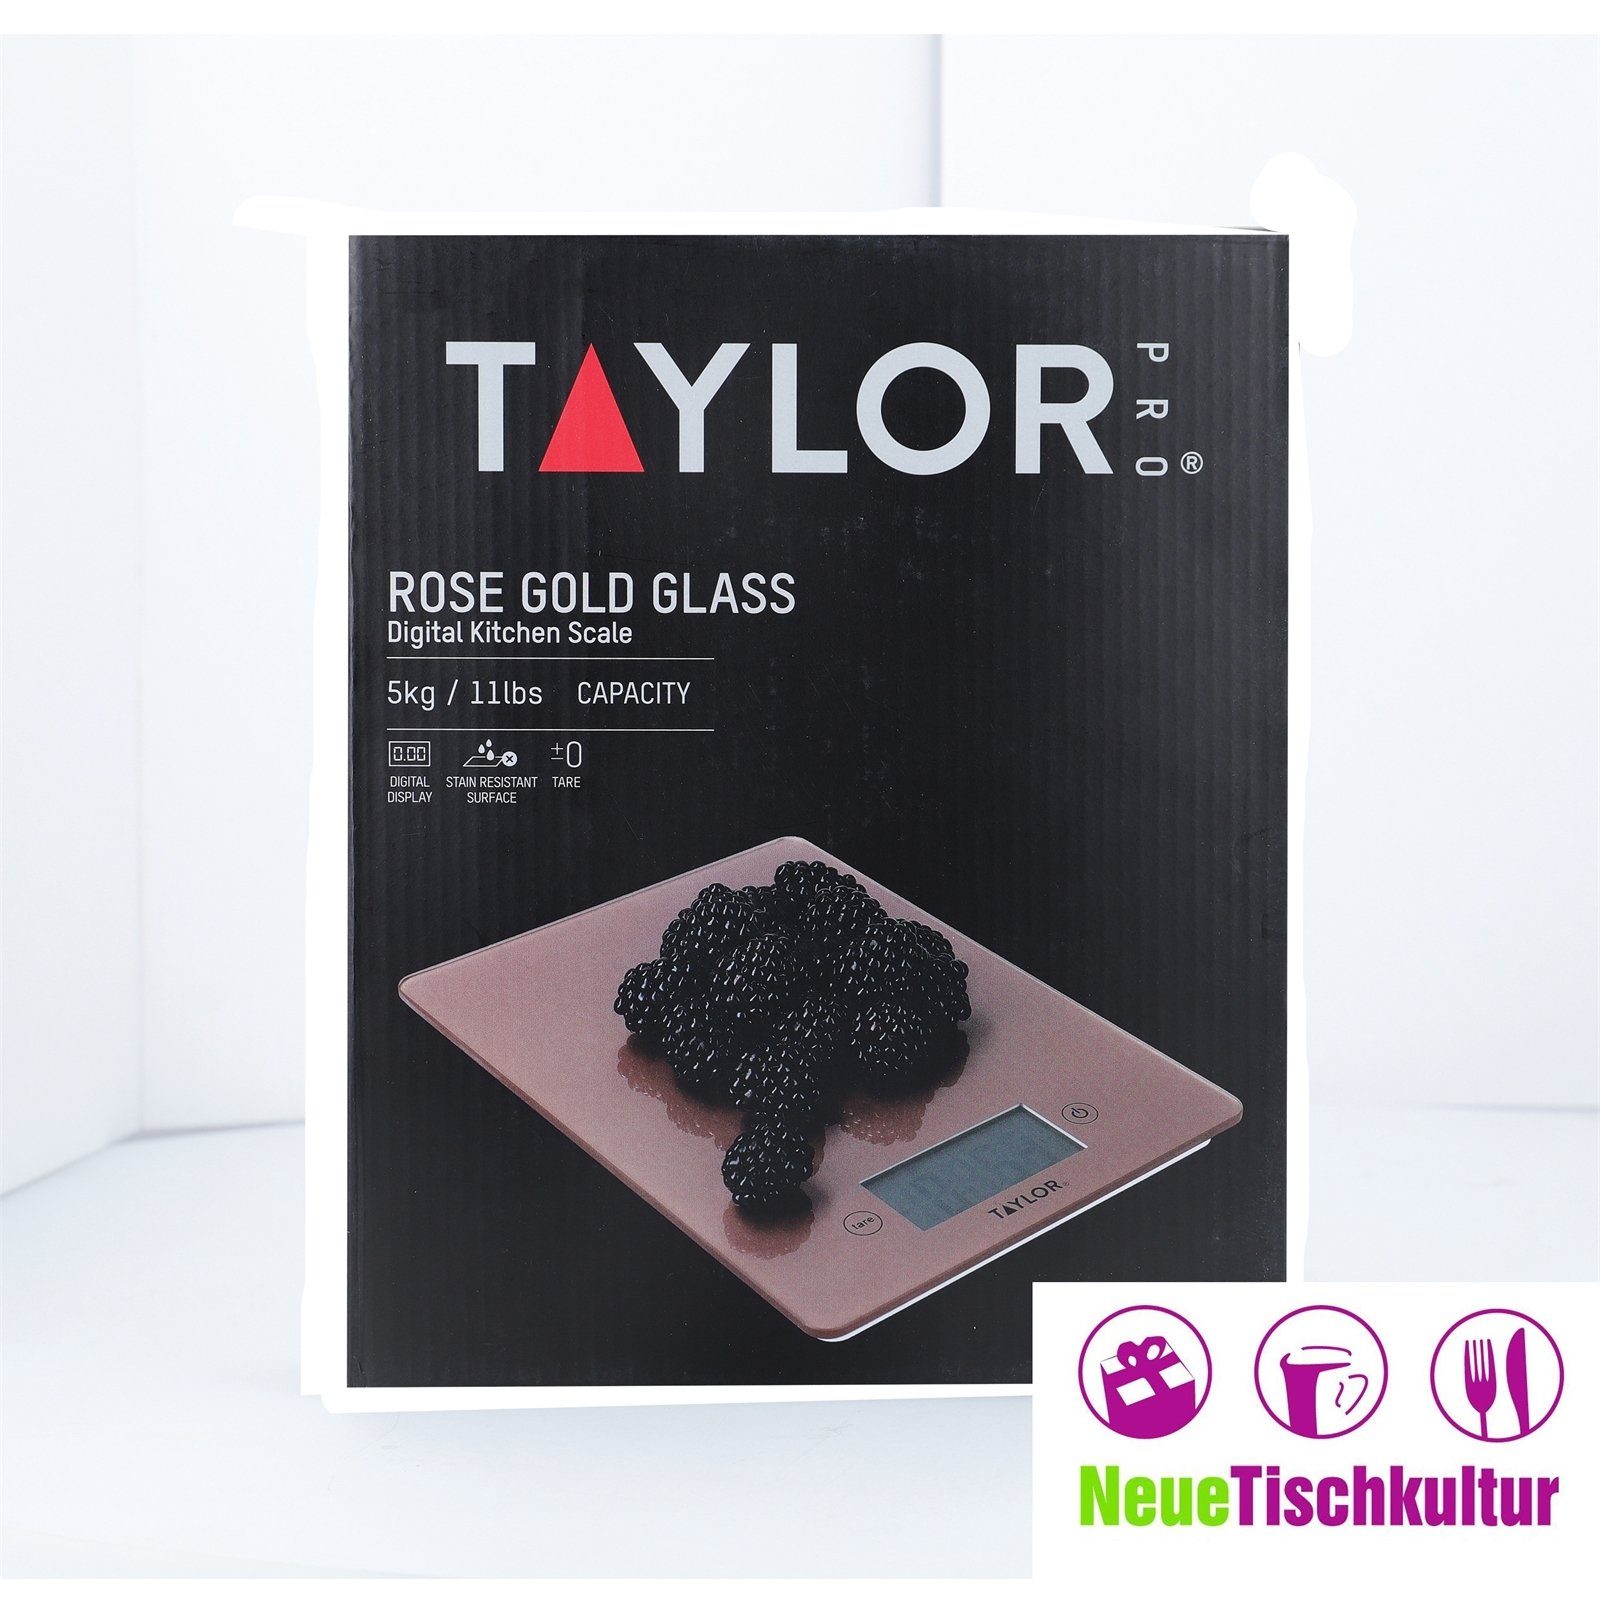 Pro, Materialmix Glas, Kg Neuetischkultur Messbecher Küchenwaage, bis Taylor 5 Digitale Glas, Rosegold